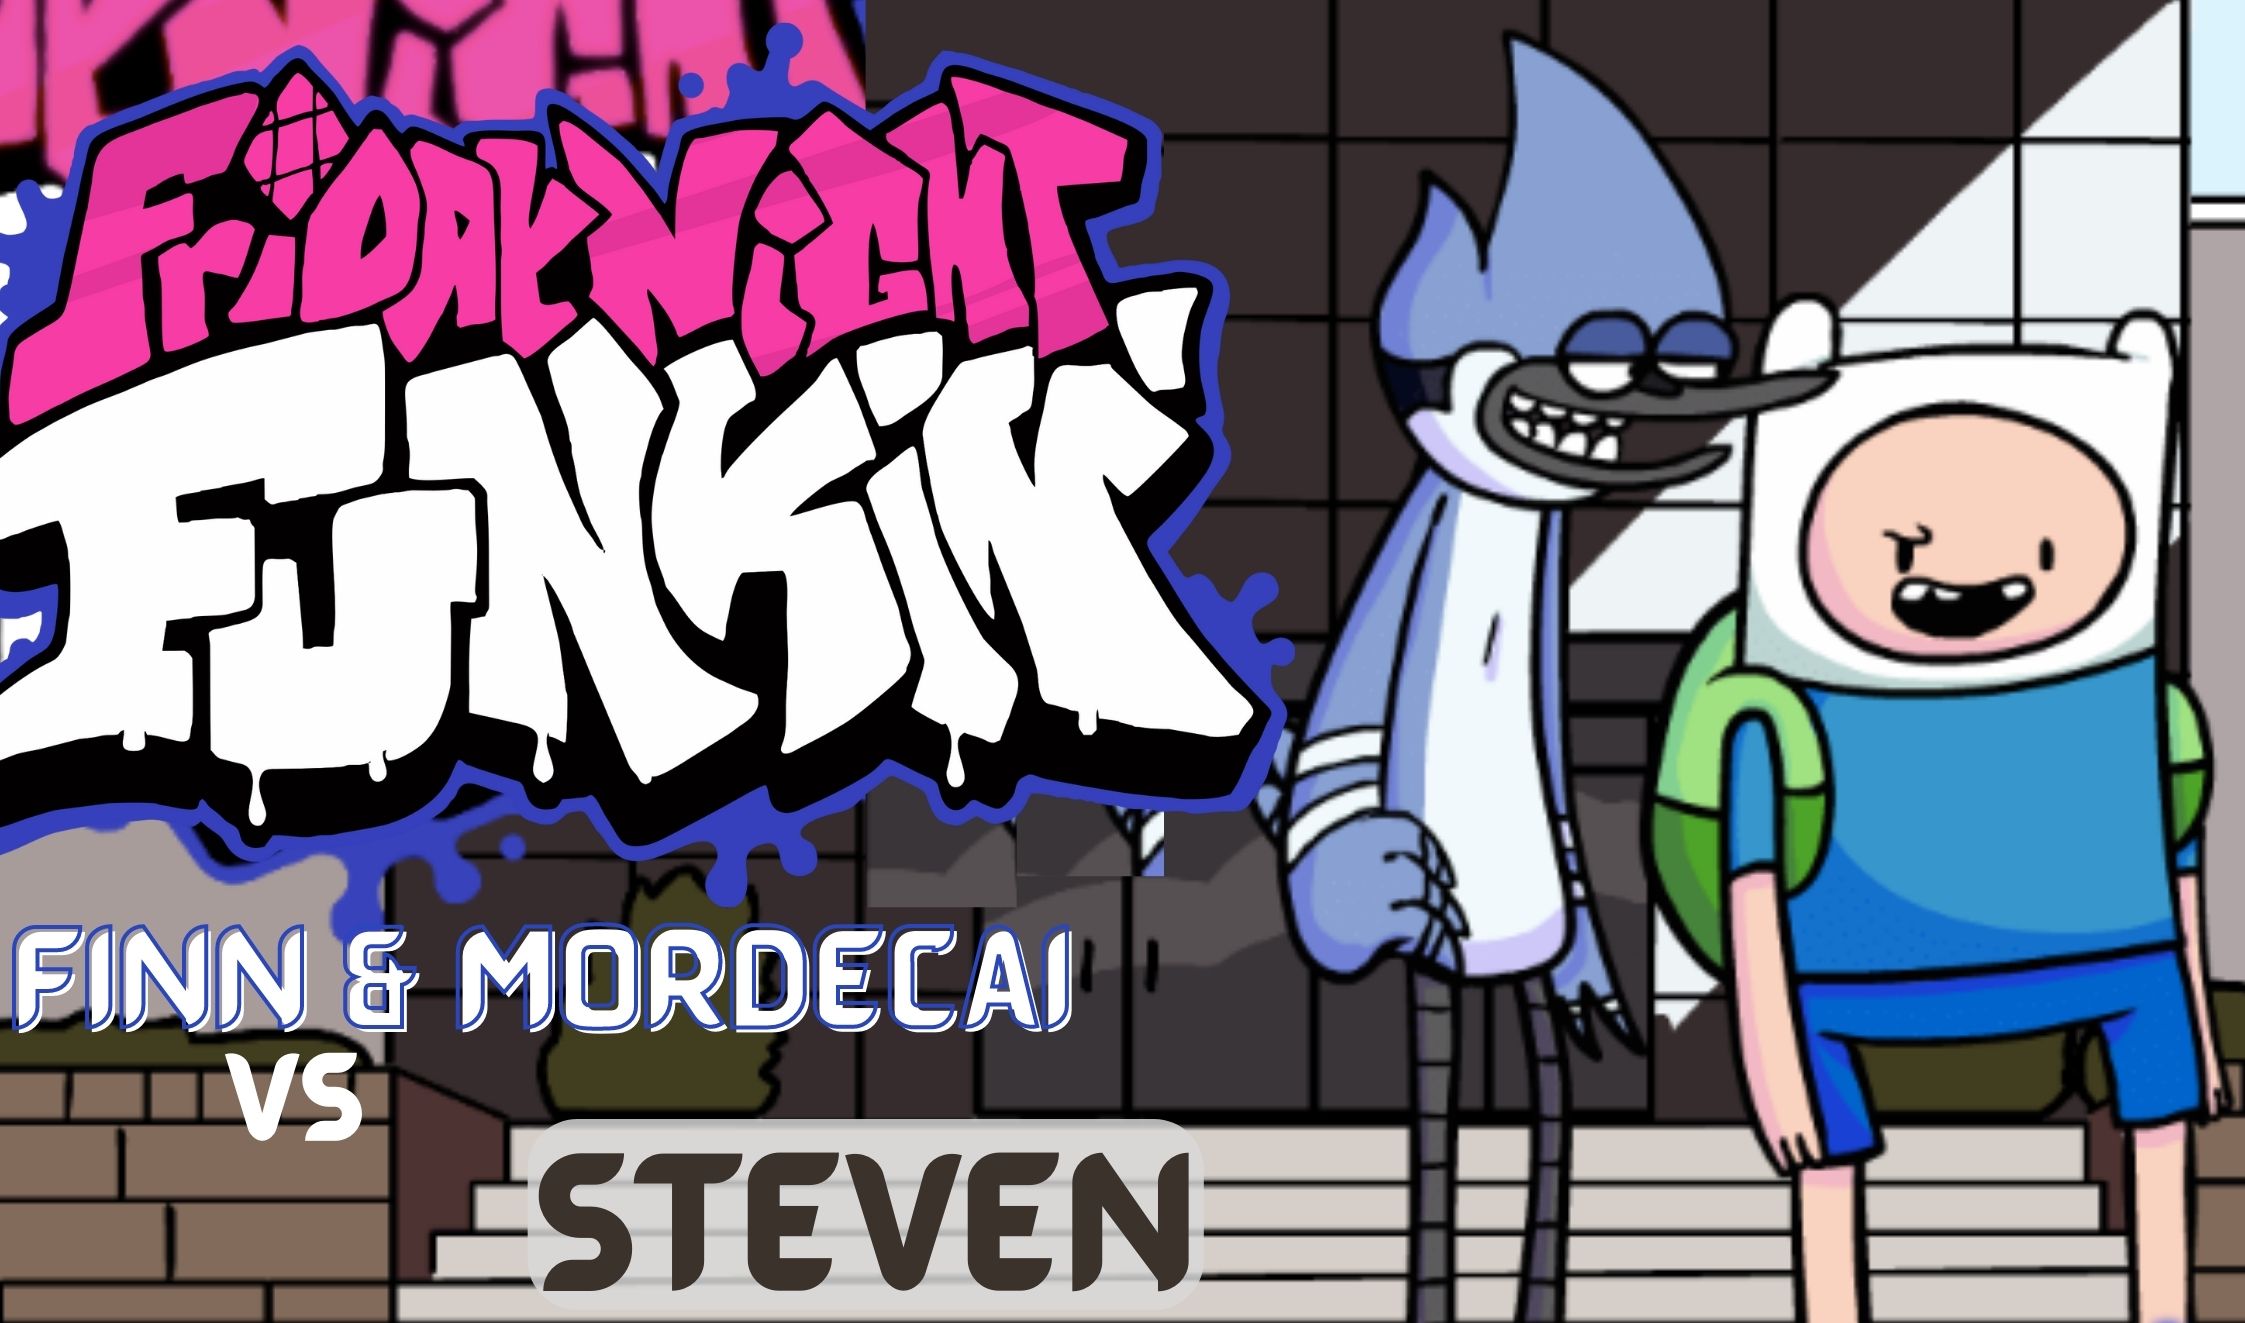 FNF Finn & Mordecai vs Steven | Roasting on a Cartoon Friday Mod - FNF GO